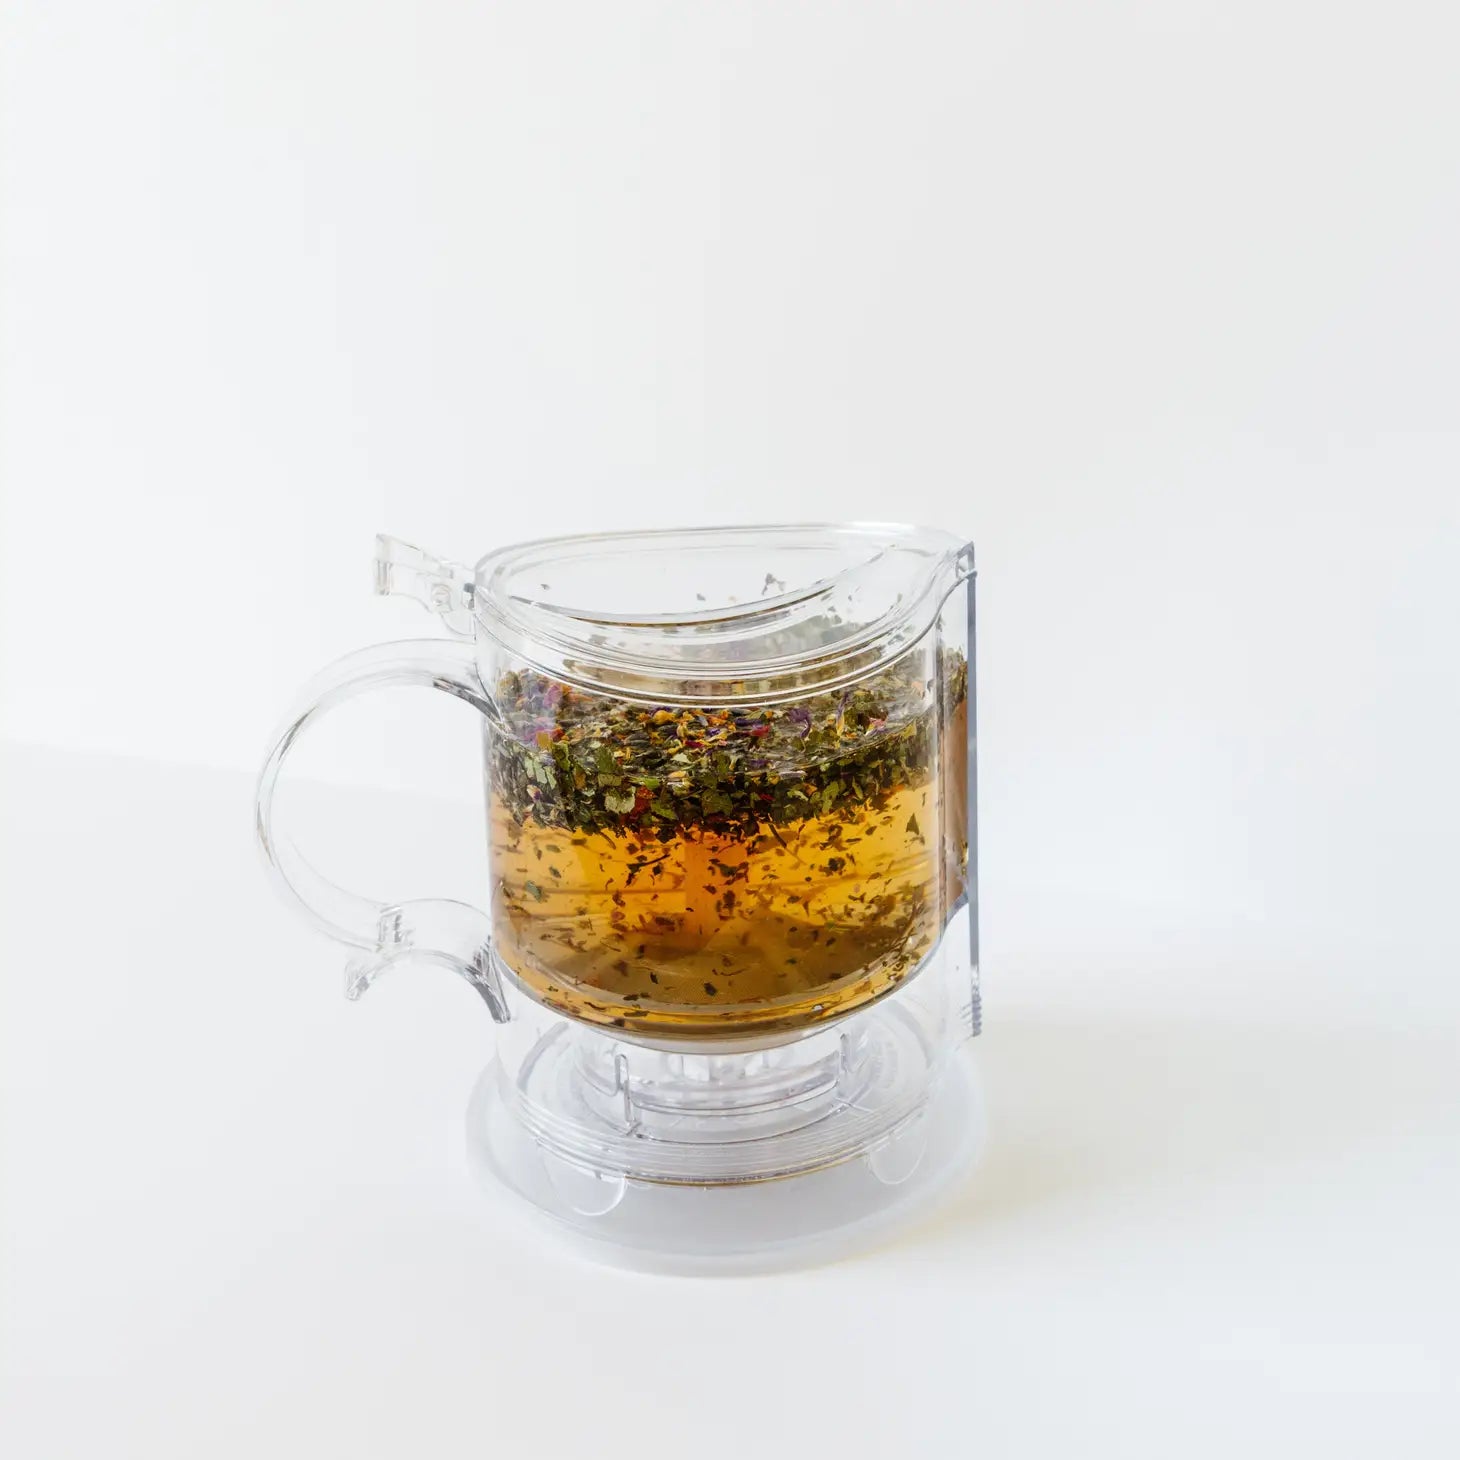 Gravity Loose Leaf Tea Maker